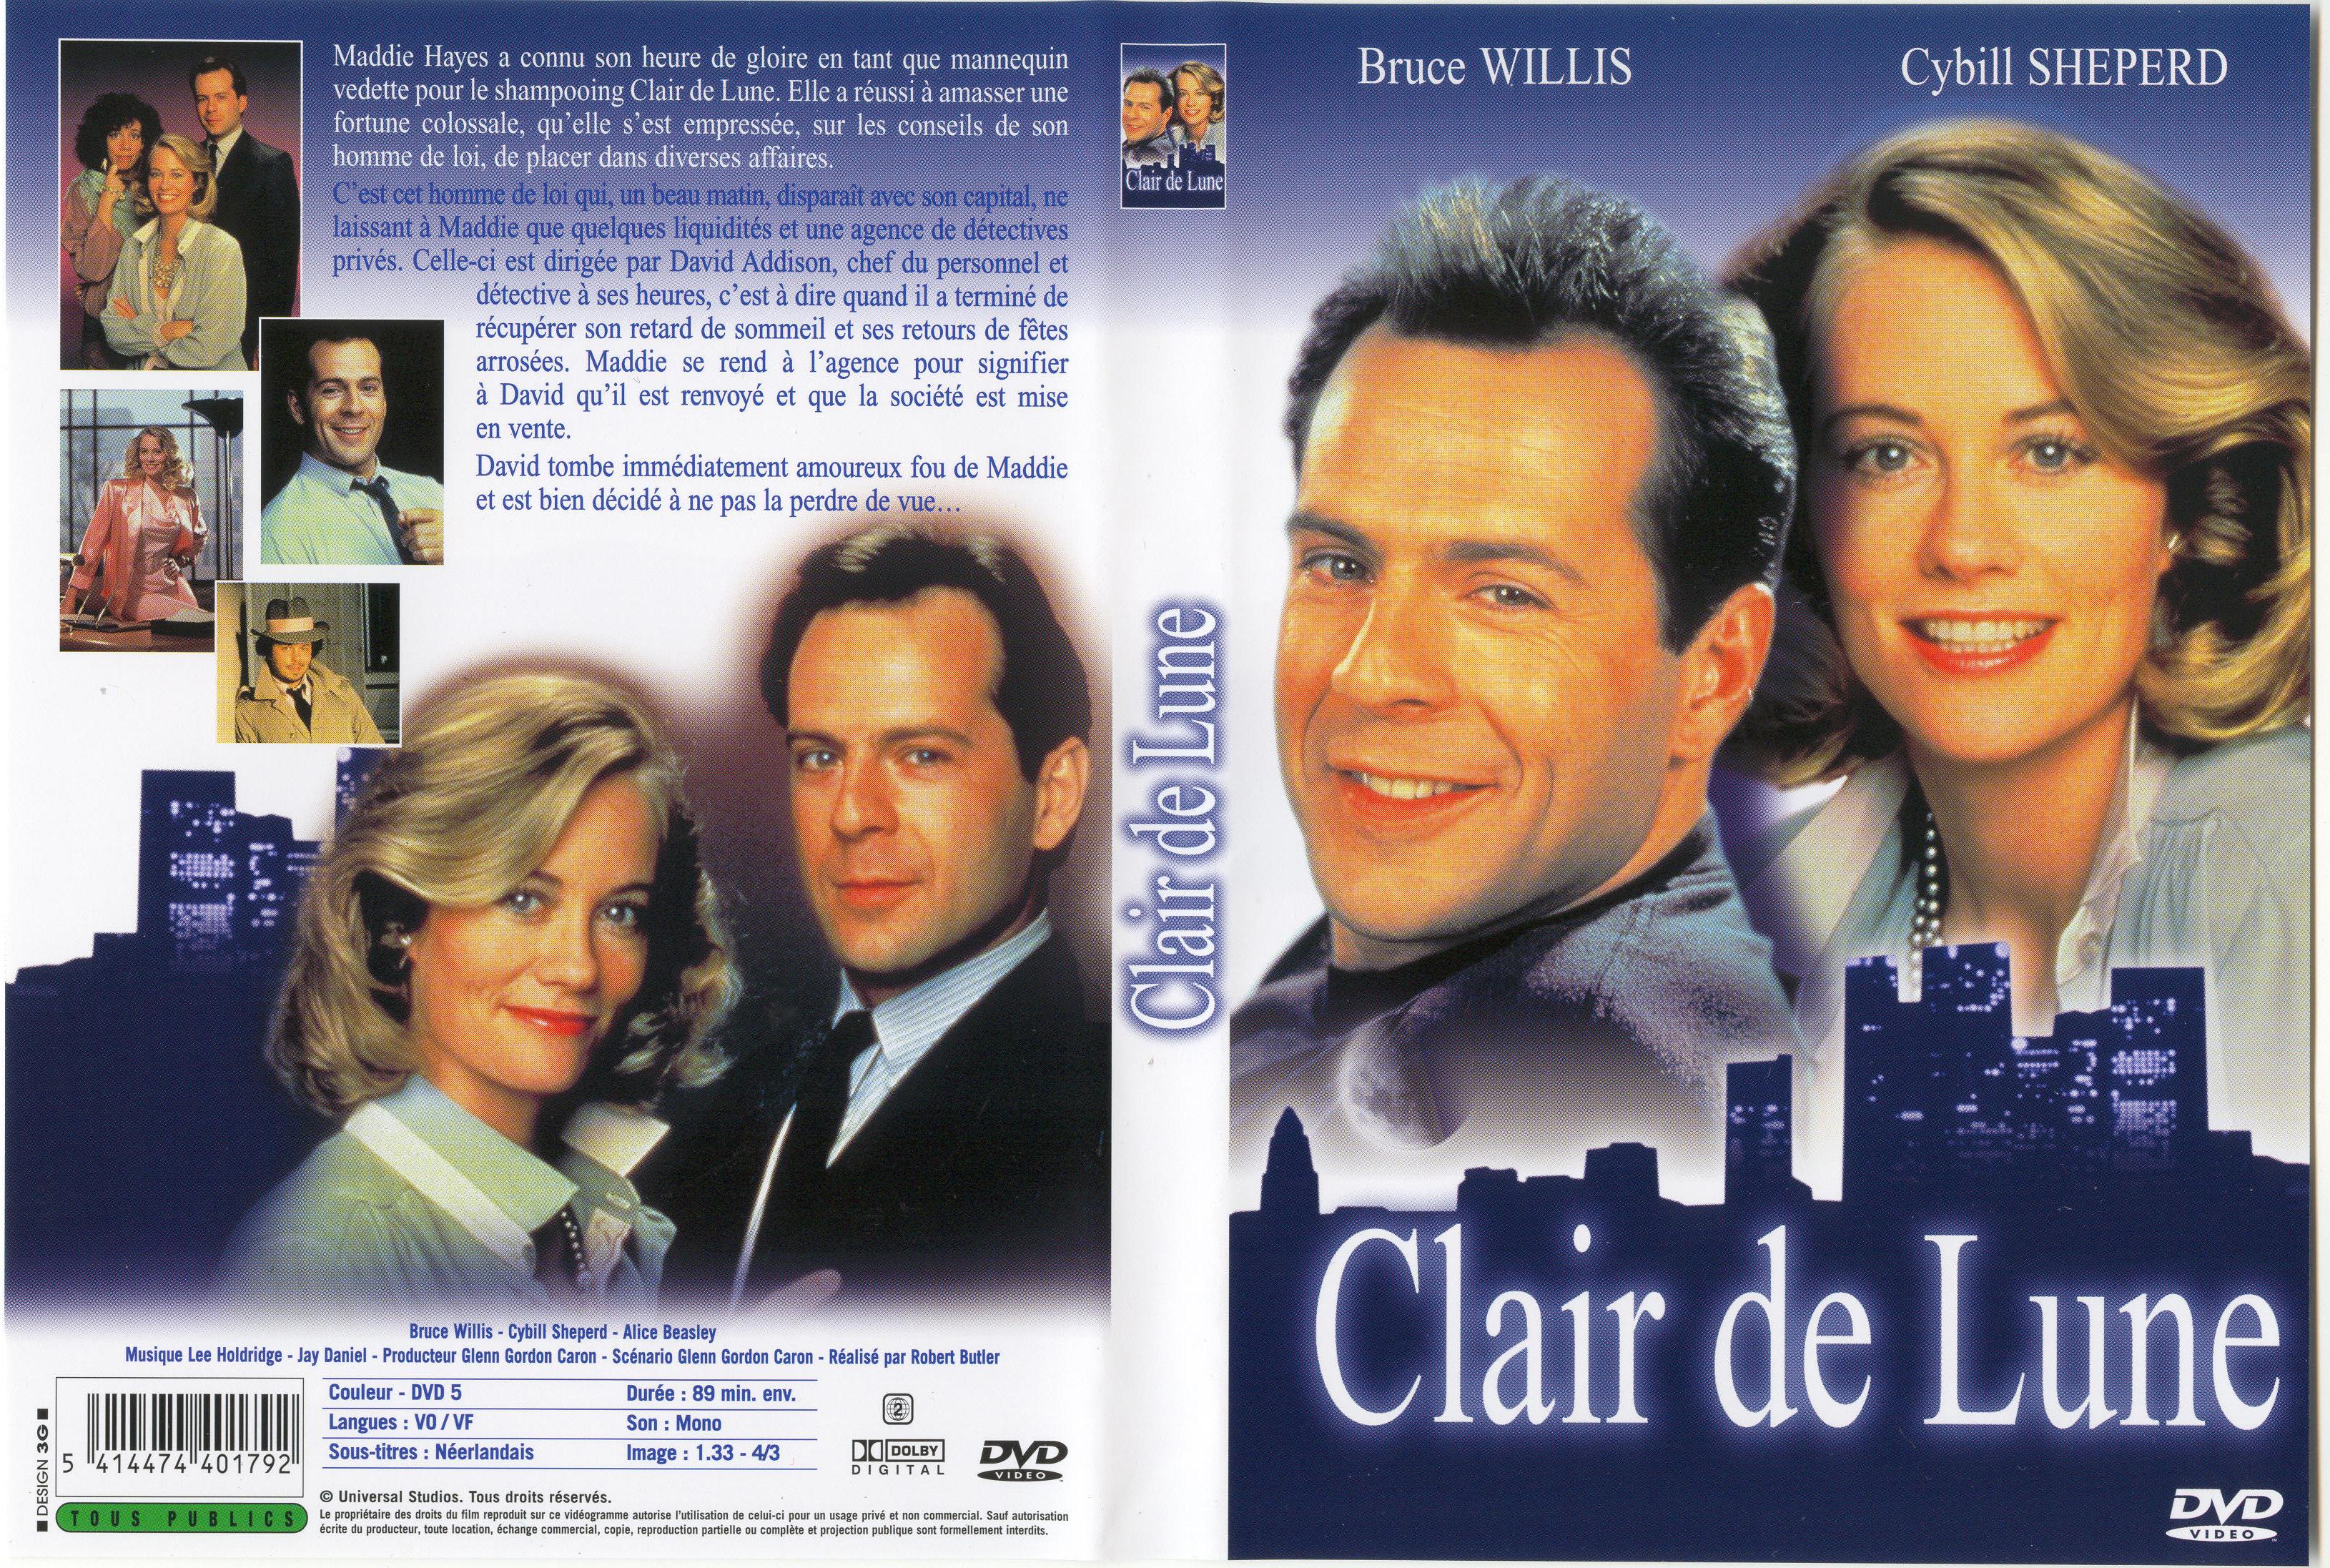 Jaquette DVD Clair de lune v2